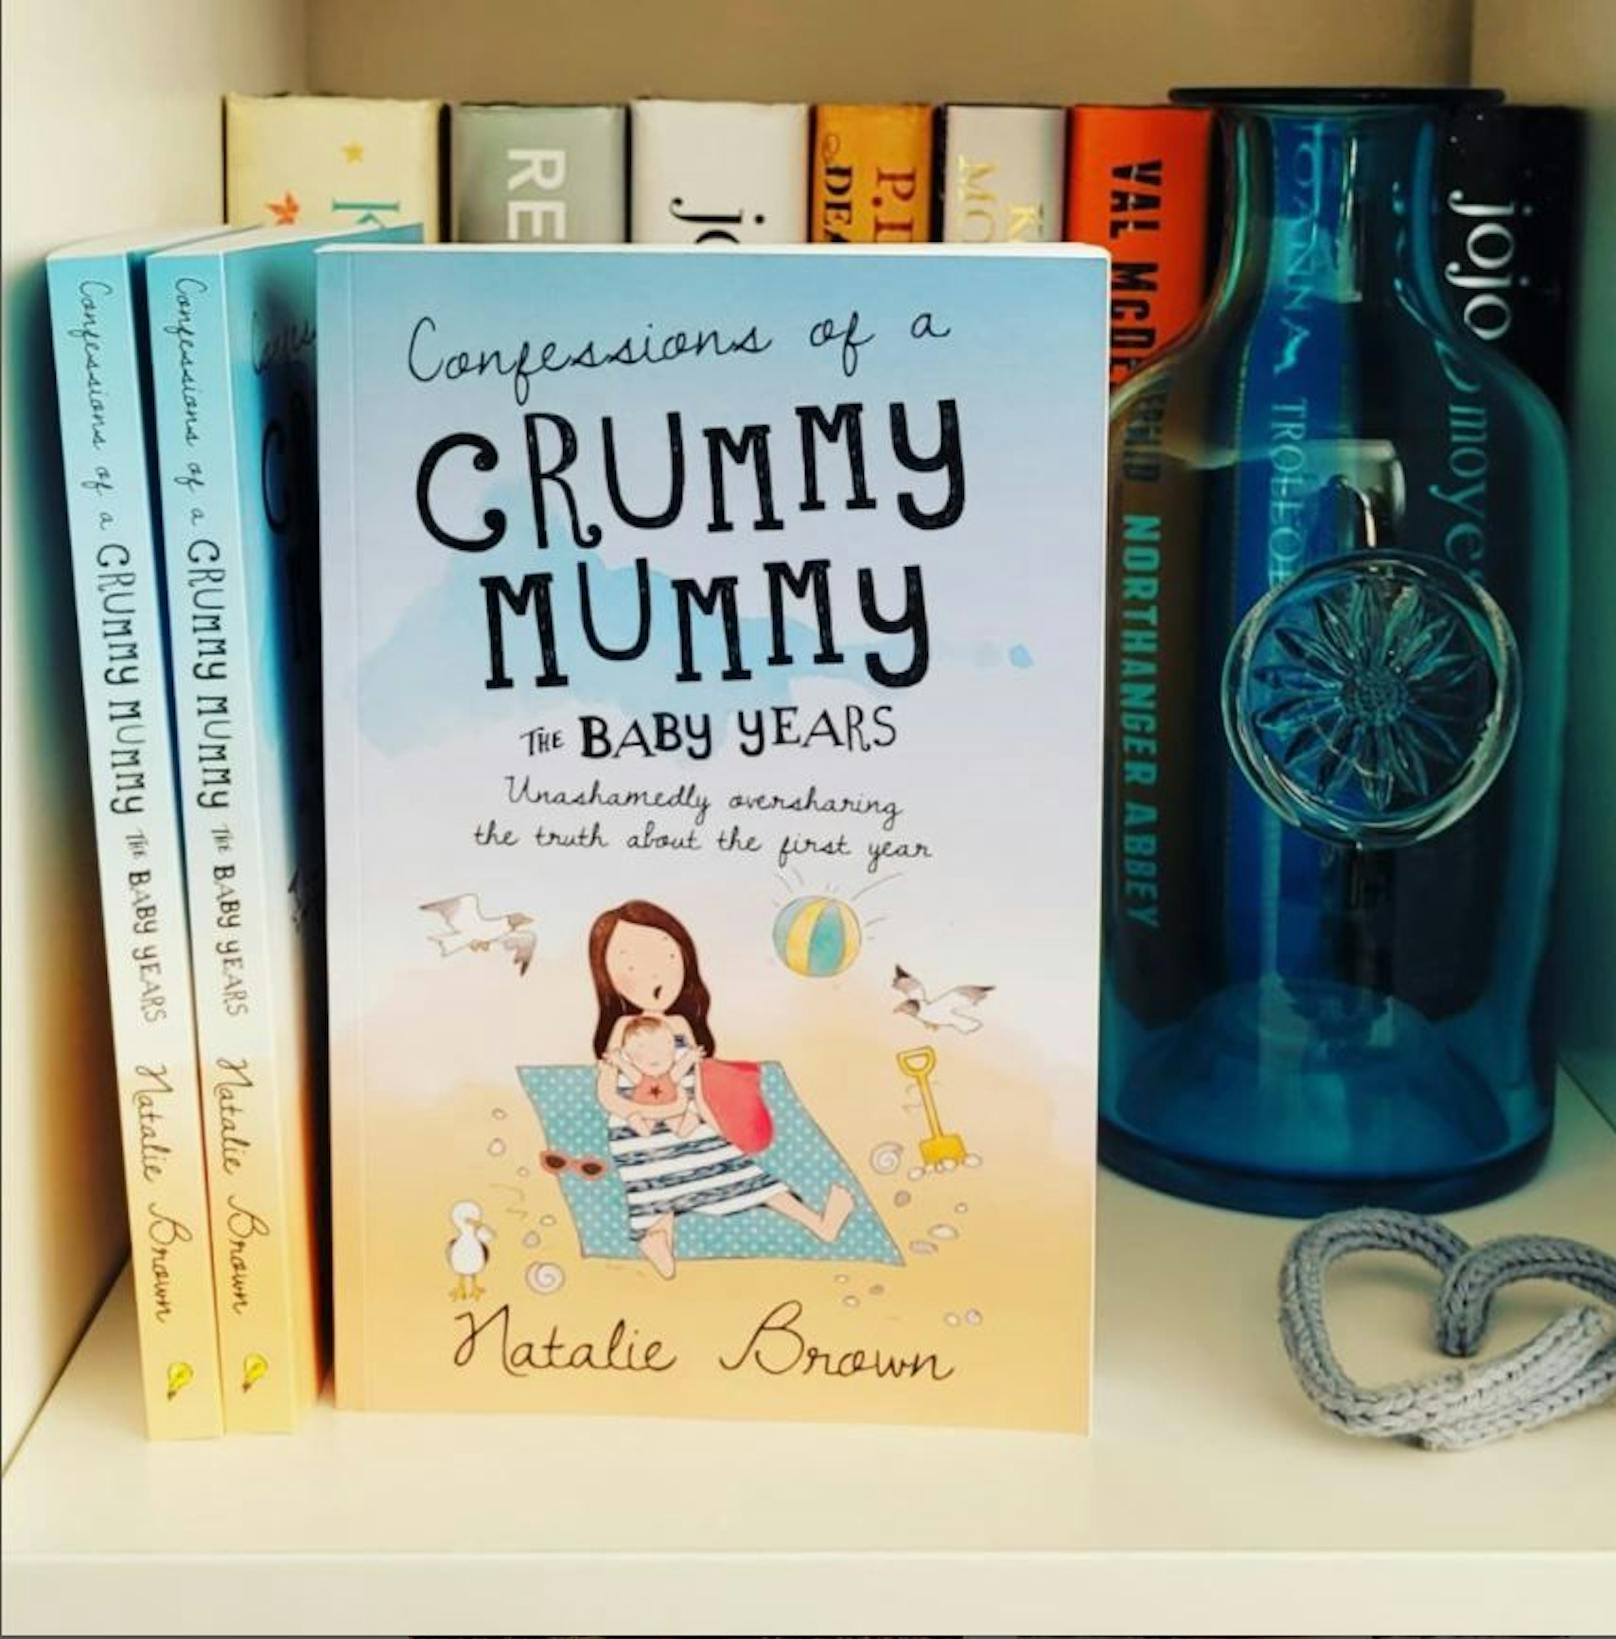 Gleich wie ihr Instagram-Account heißt auch das Buch über die Abenteuer der "Crummy Mummy".